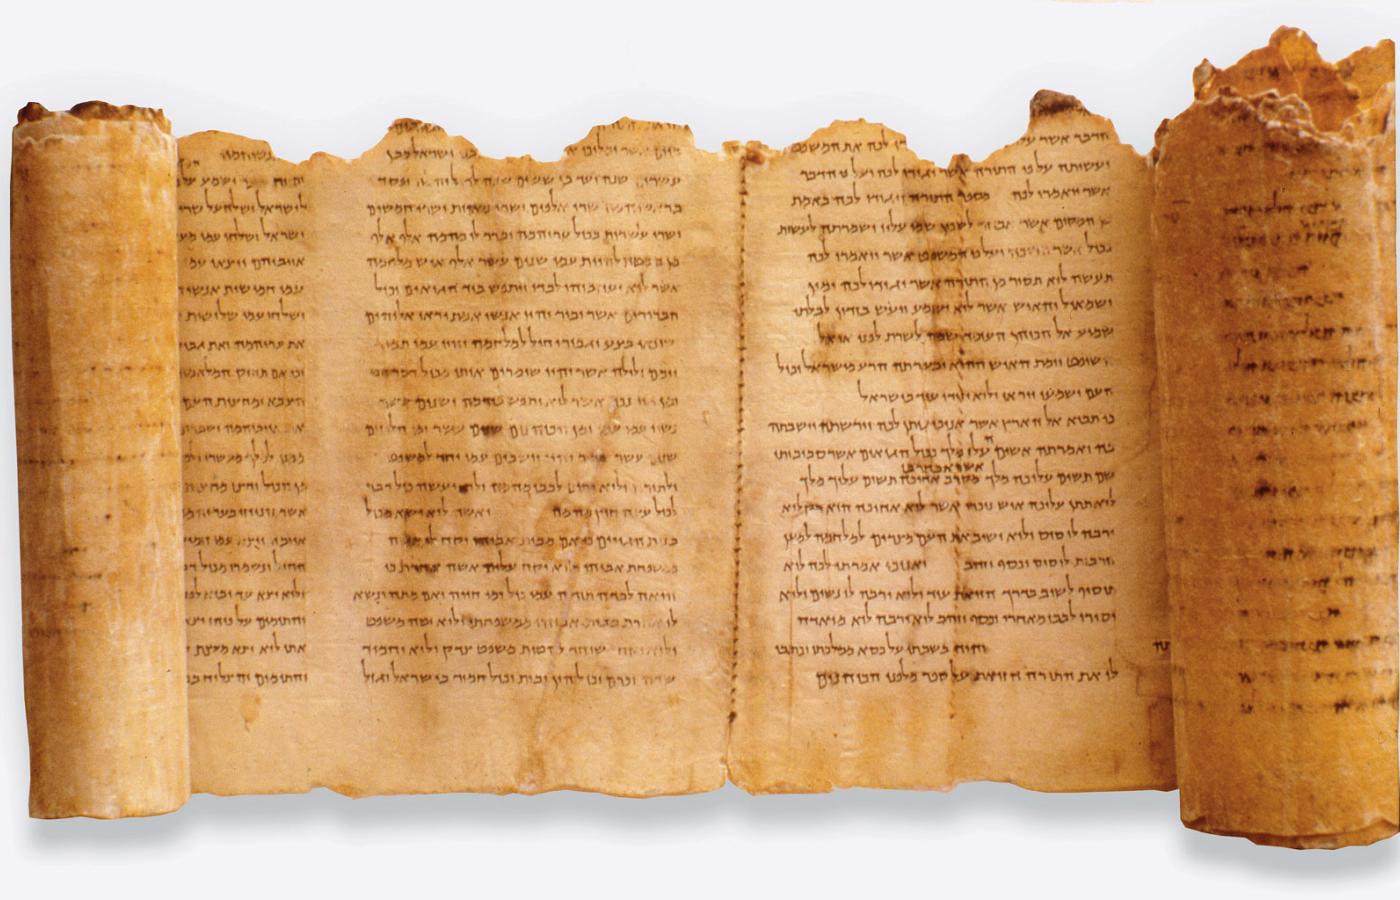 Hebrajski tekst na jednym ze zwojów odkrytych w Qumran.